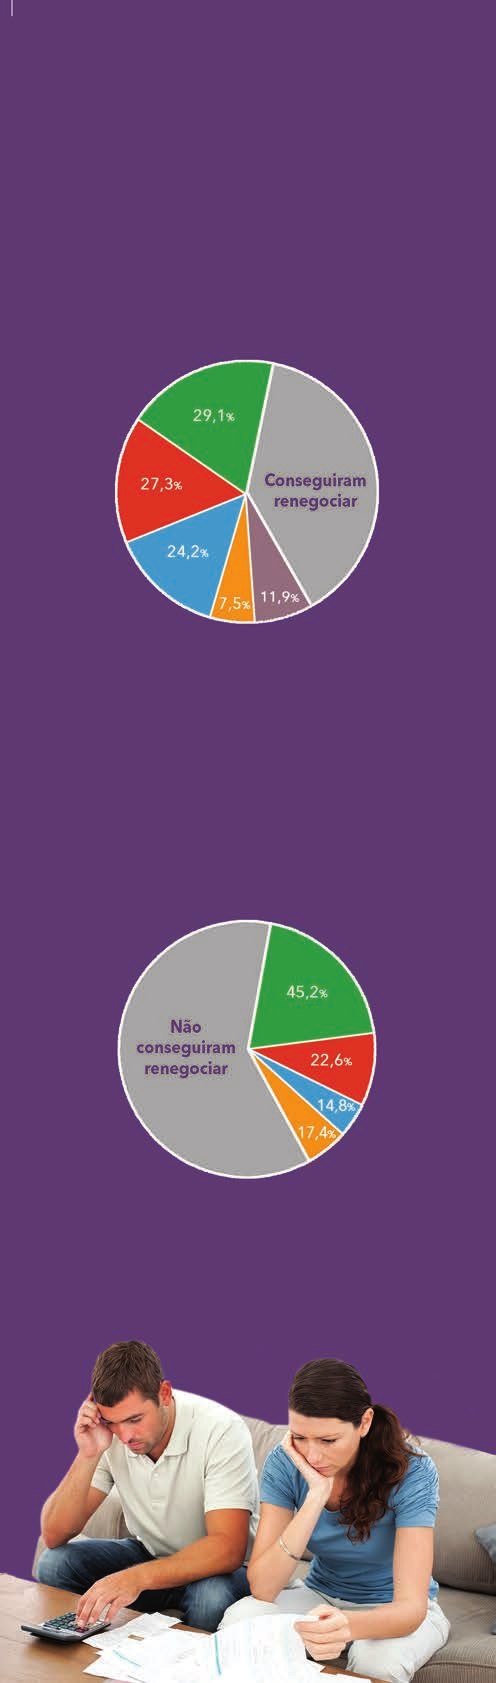 setembro: dos 556 internautas que participaram, 38% disseram que não conseguiram renegociar uma dívida porque não tinham condições de pagar o acordo proposto pela empresa.